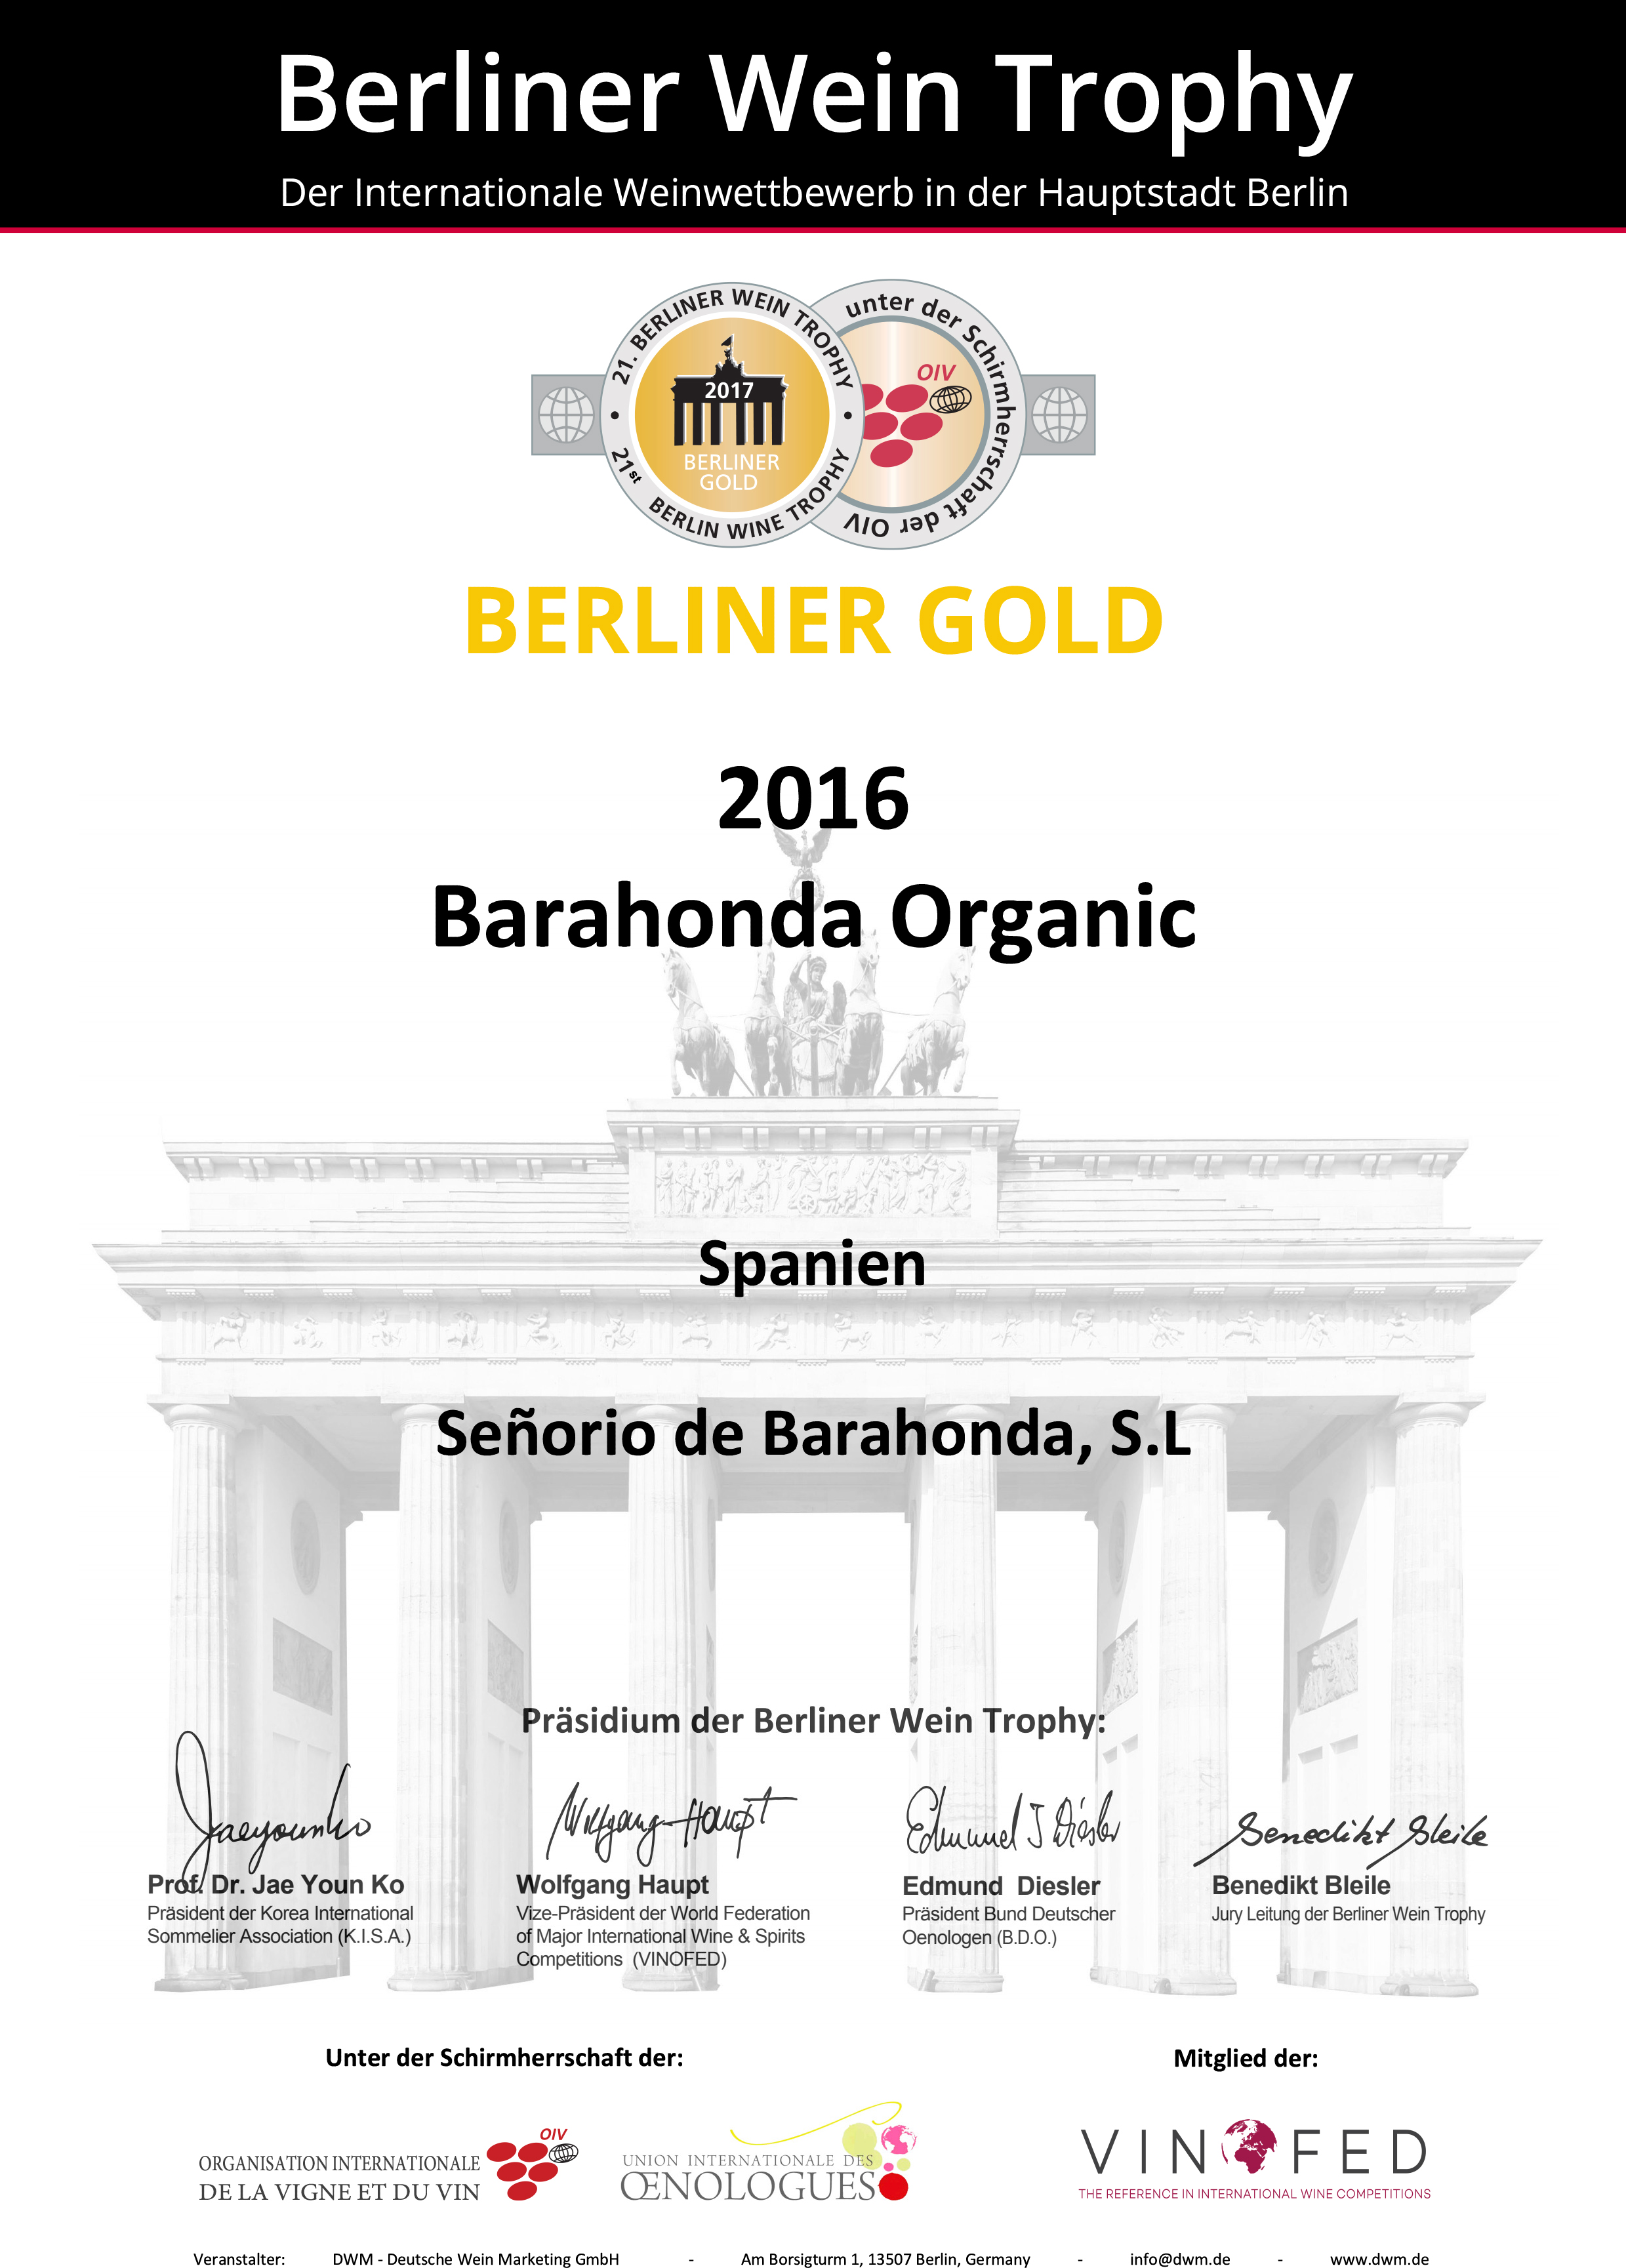 Berliner Wein GOLD Trophy 2017